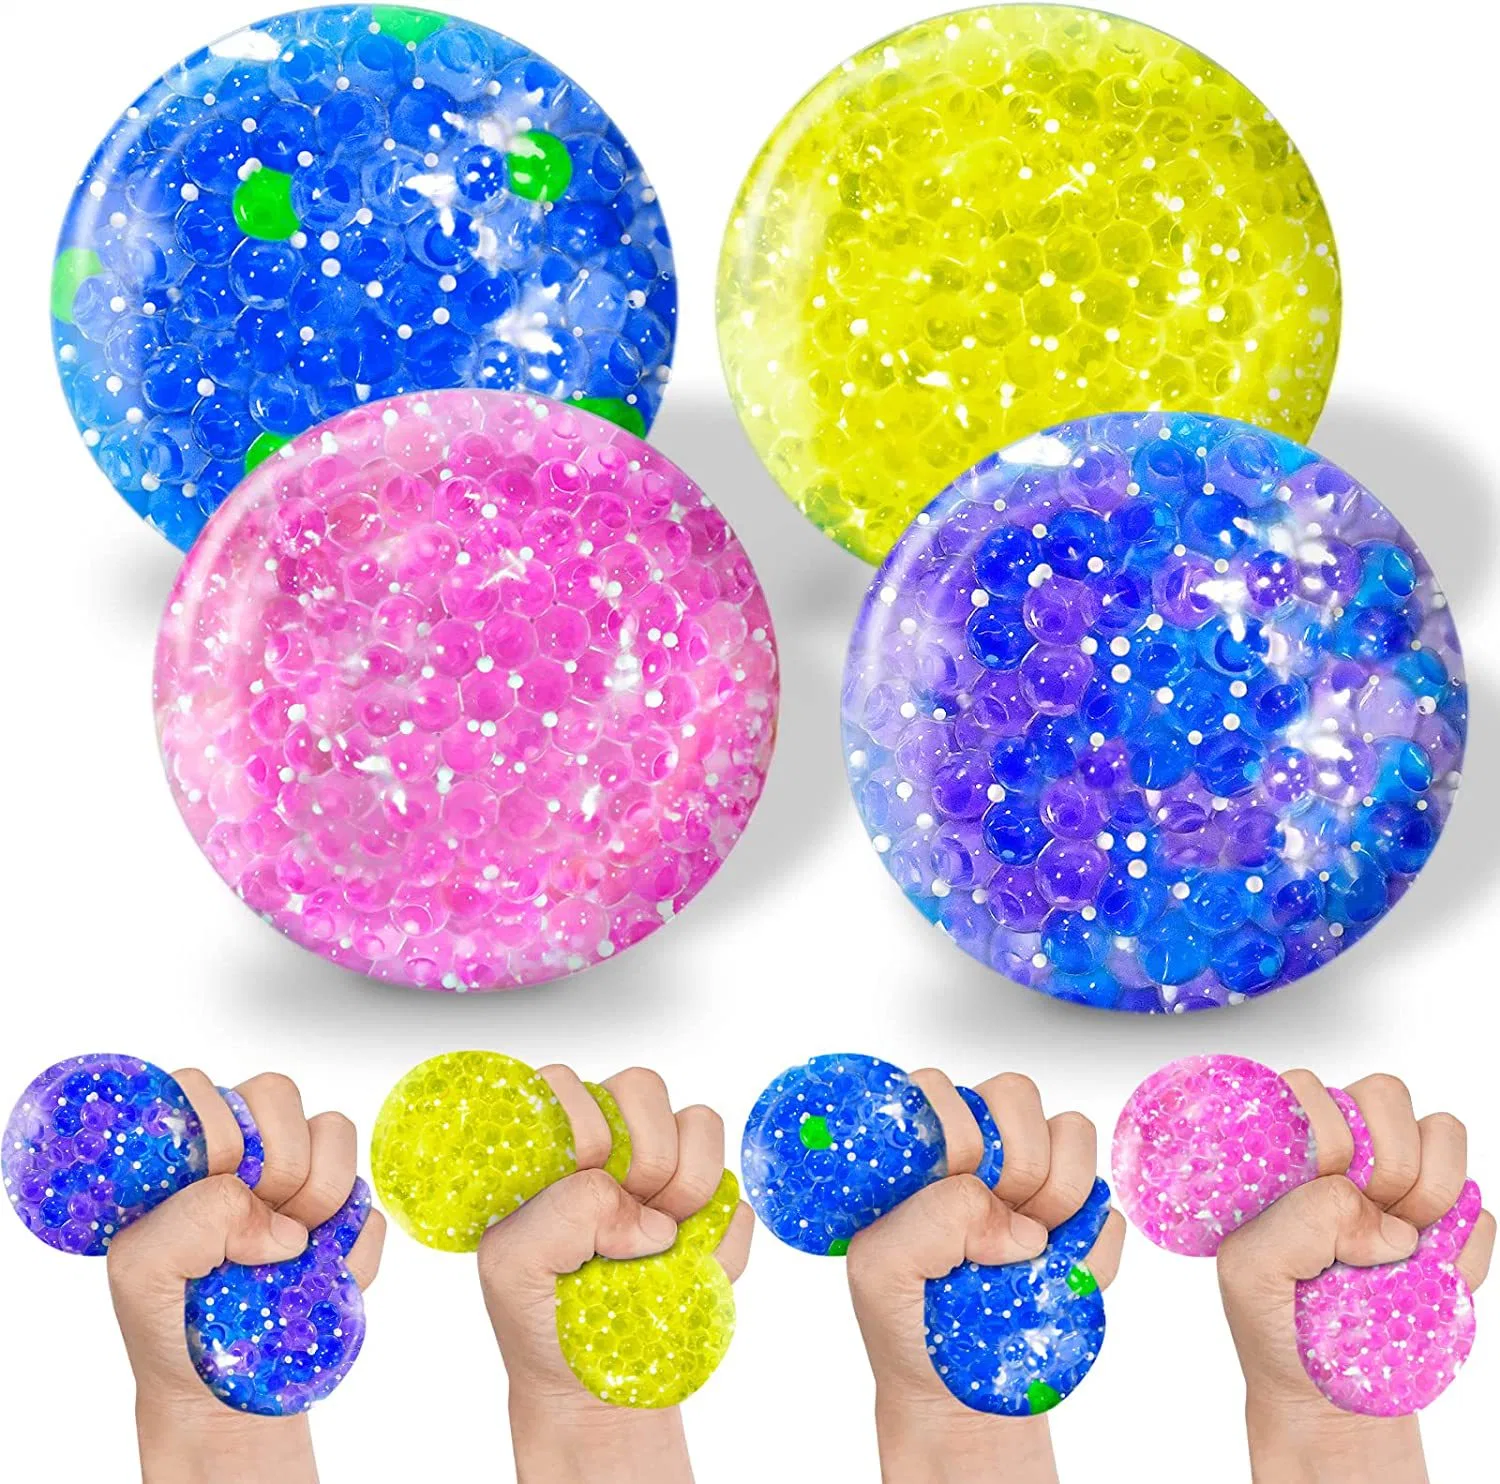 Comercio al por mayor de los dedos de promoción de la mano Squeeze Plaf Fidget Bola Bola Bola de compresión de malla de juguete para niños regalos